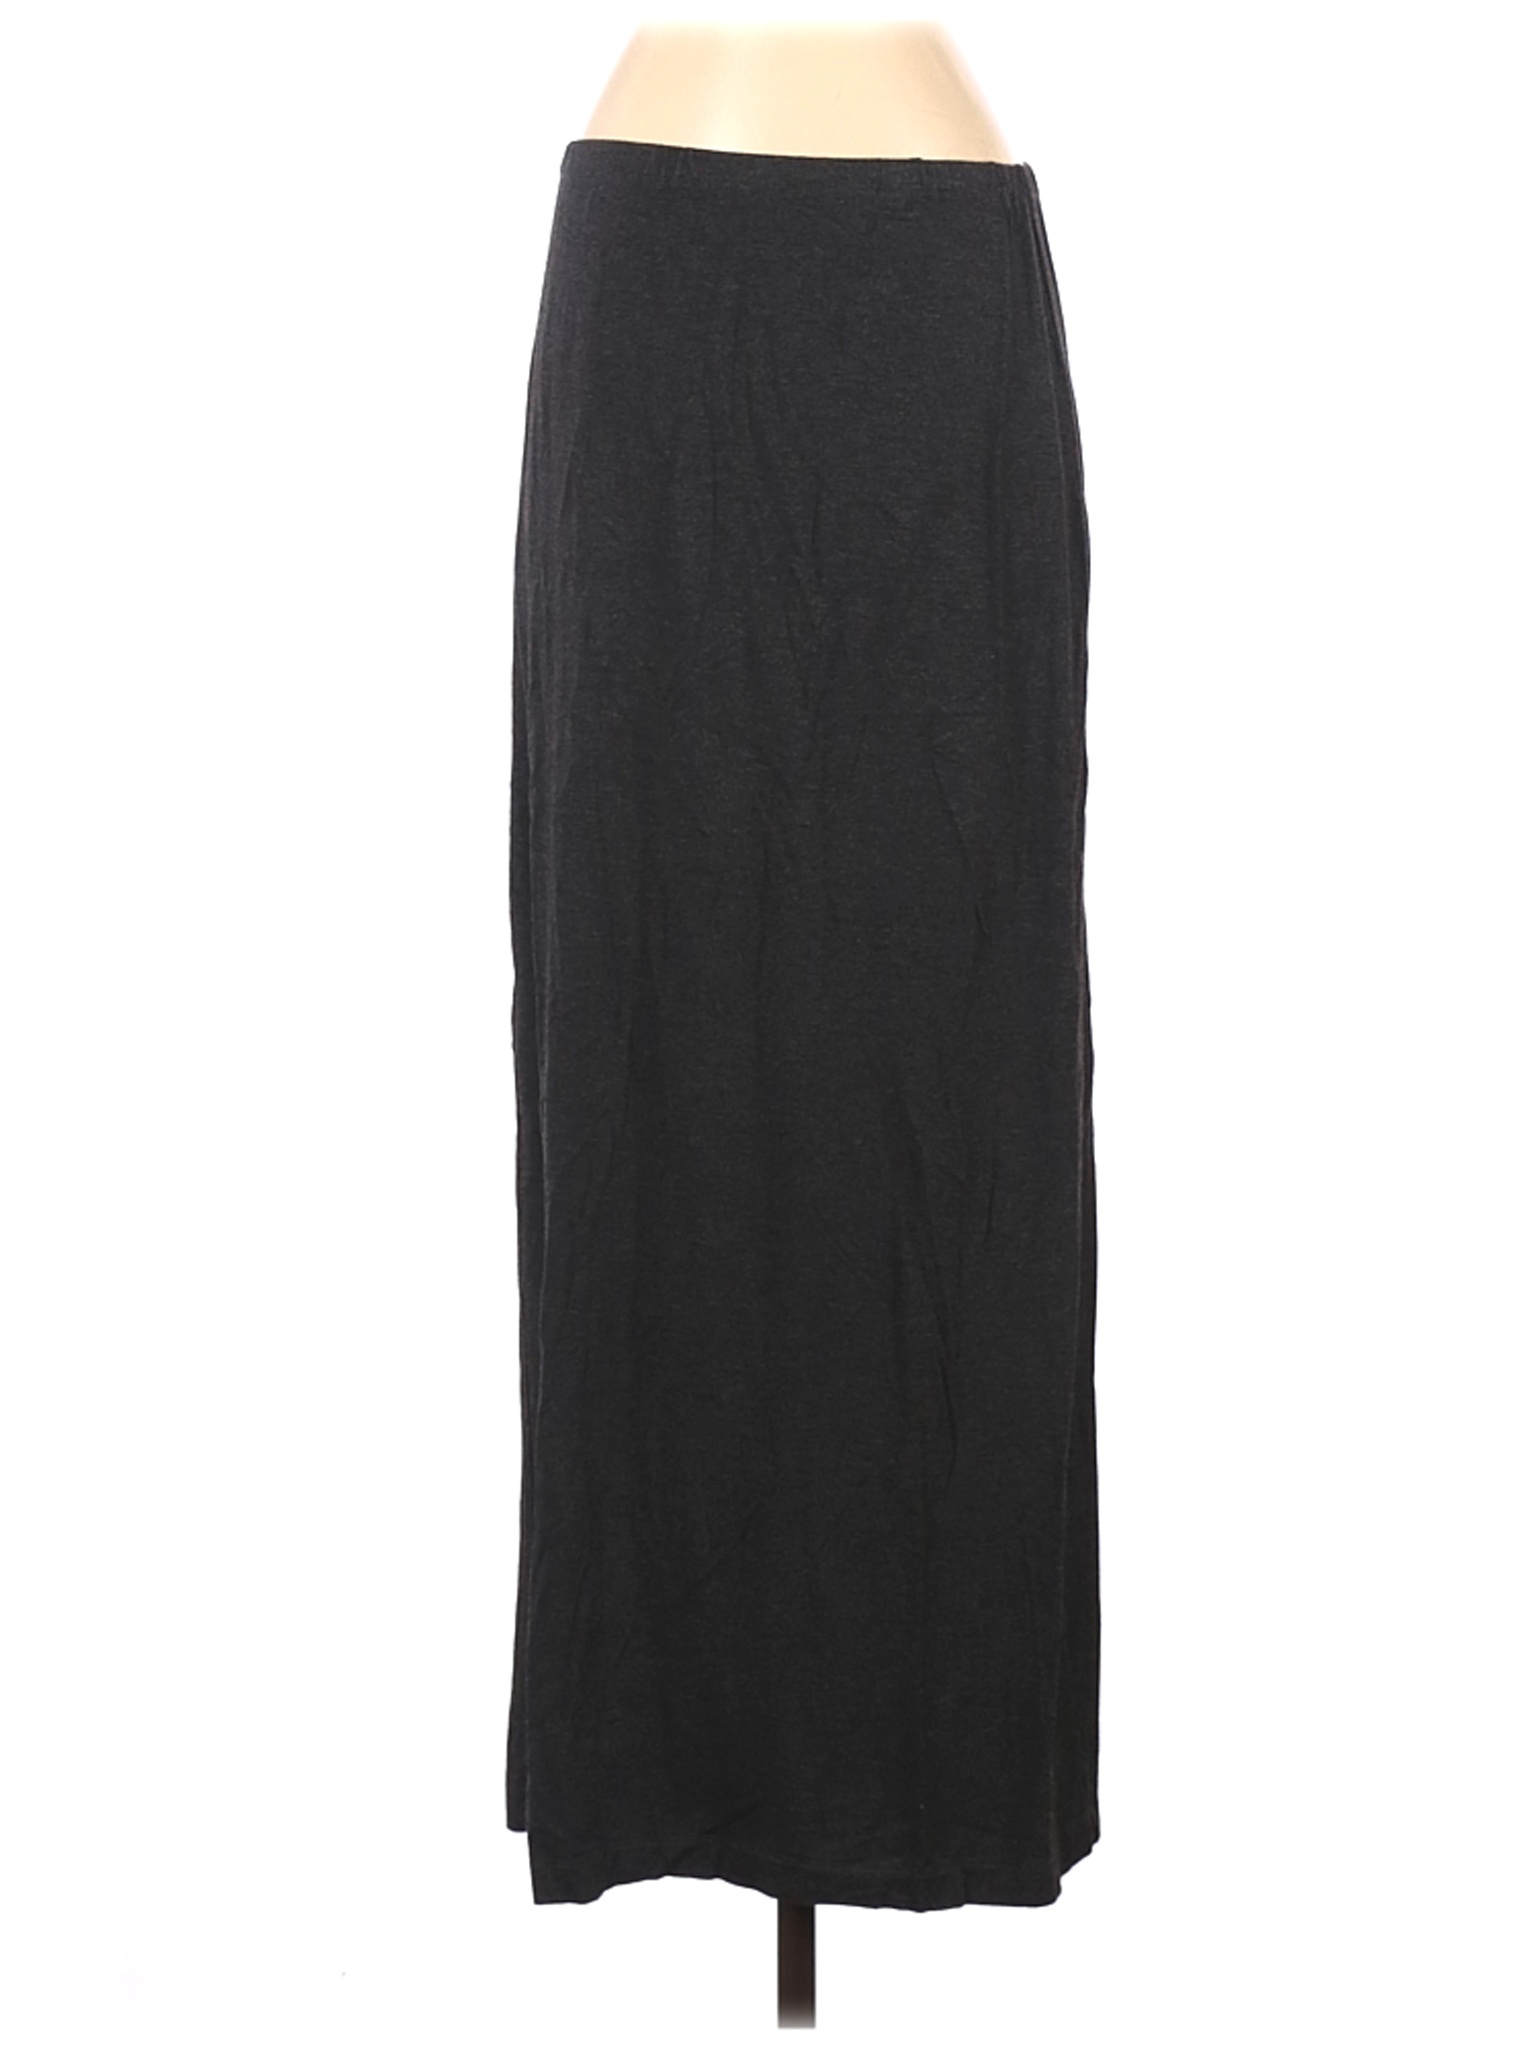 Lauren by Ralph Lauren Women Black Casual Skirt M | eBay